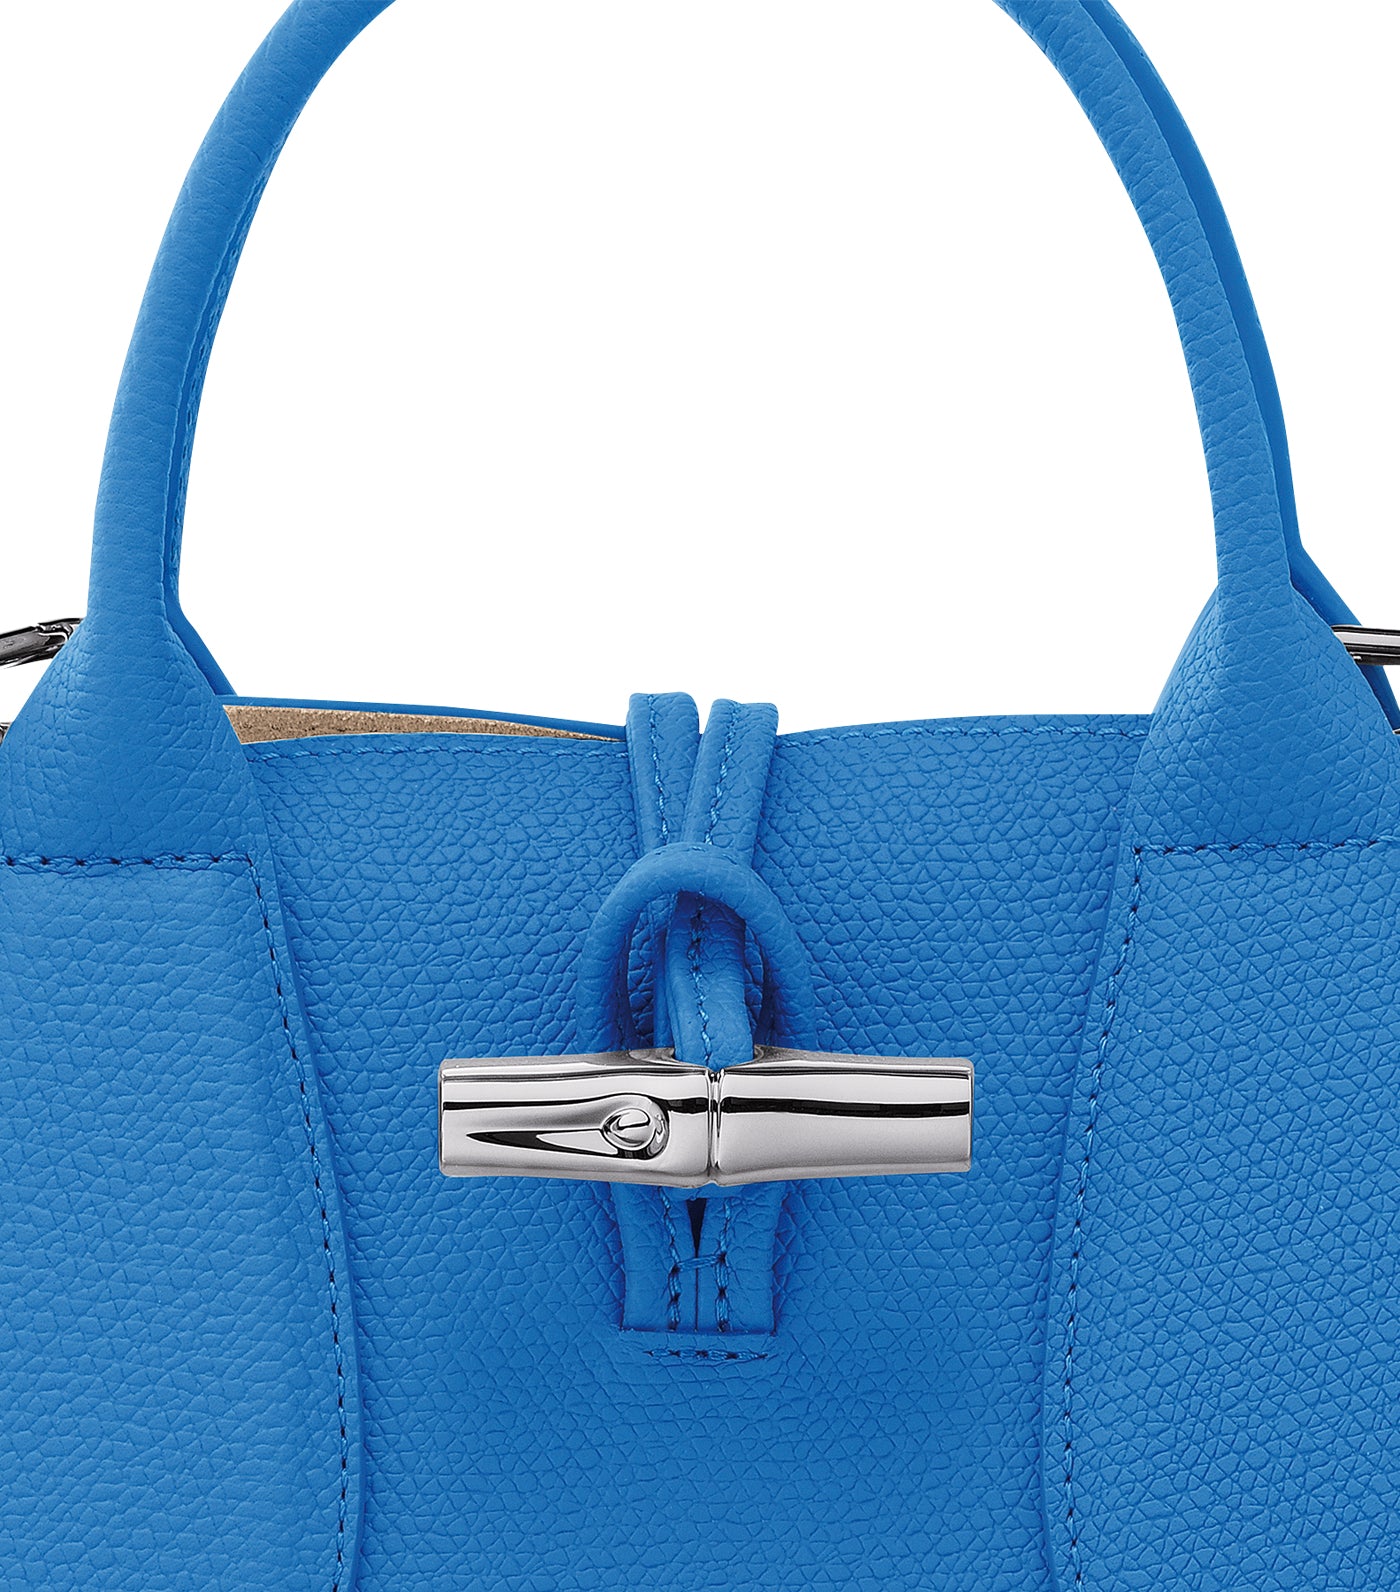 Longchamp Shopping Bag Roseau Ecru, Women's Fashion, Bags & Wallets, Tote  Bags on Carousell